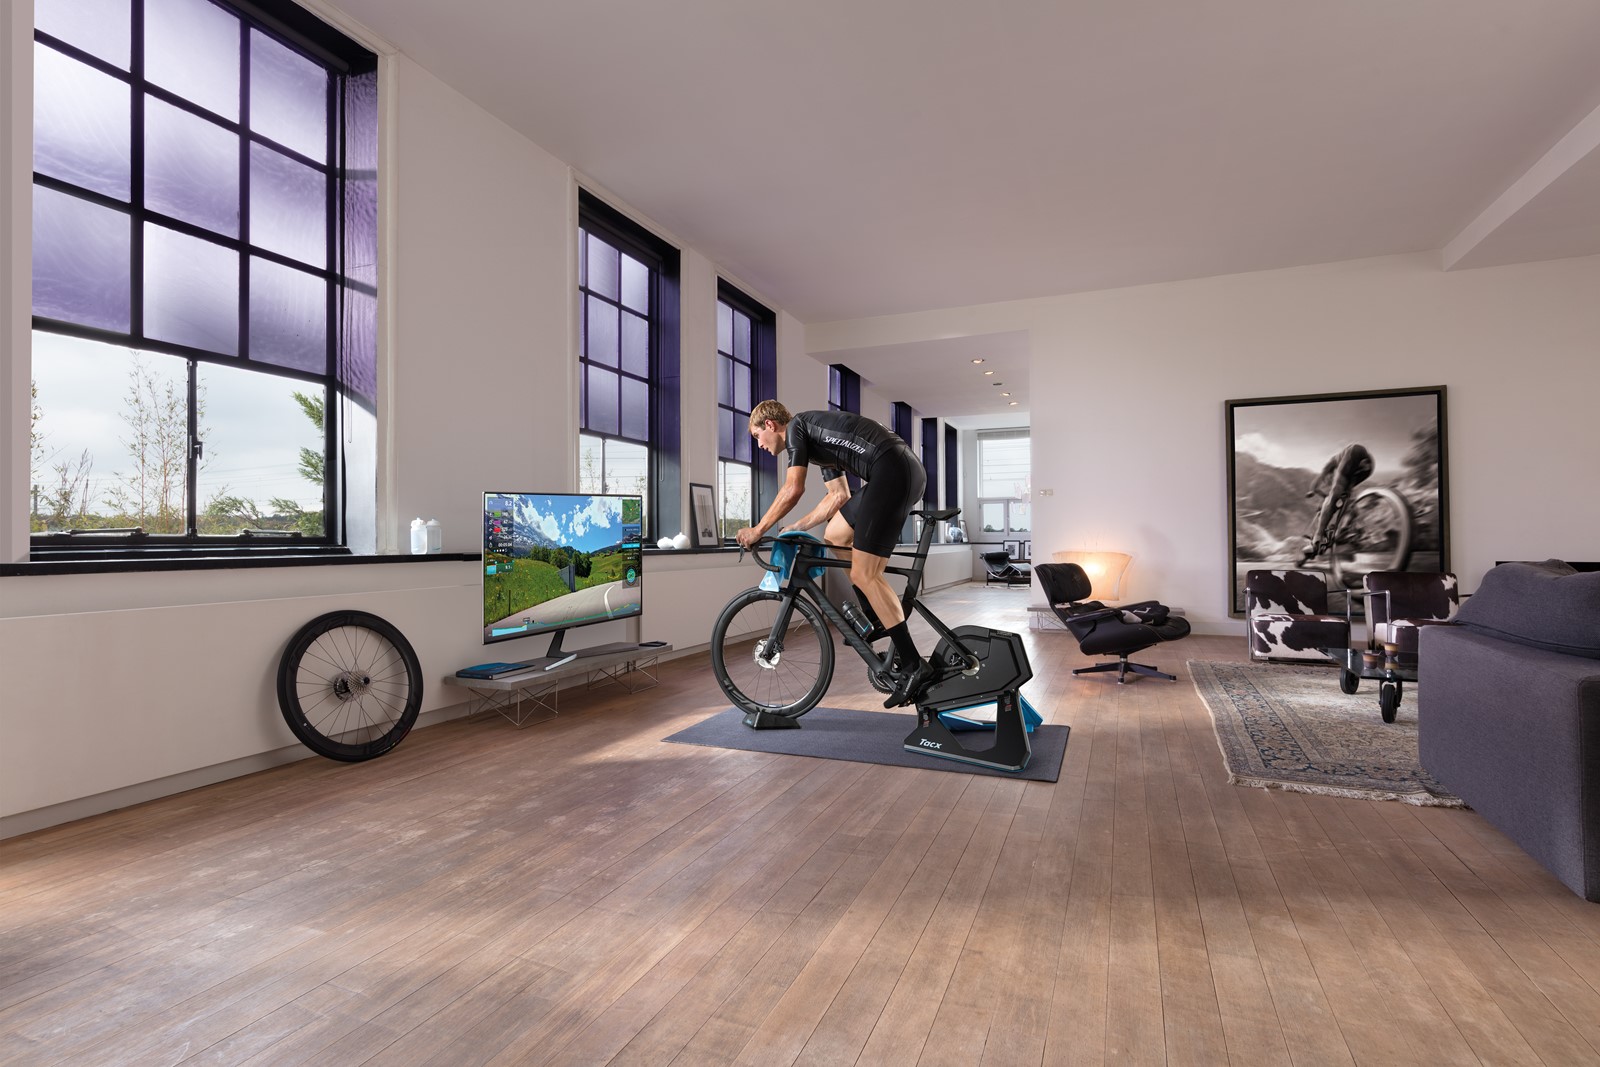 Pametni biciklistički trenažer omogućava zabavno treniranje u sobi -  Gadgeti @ Bug.hr